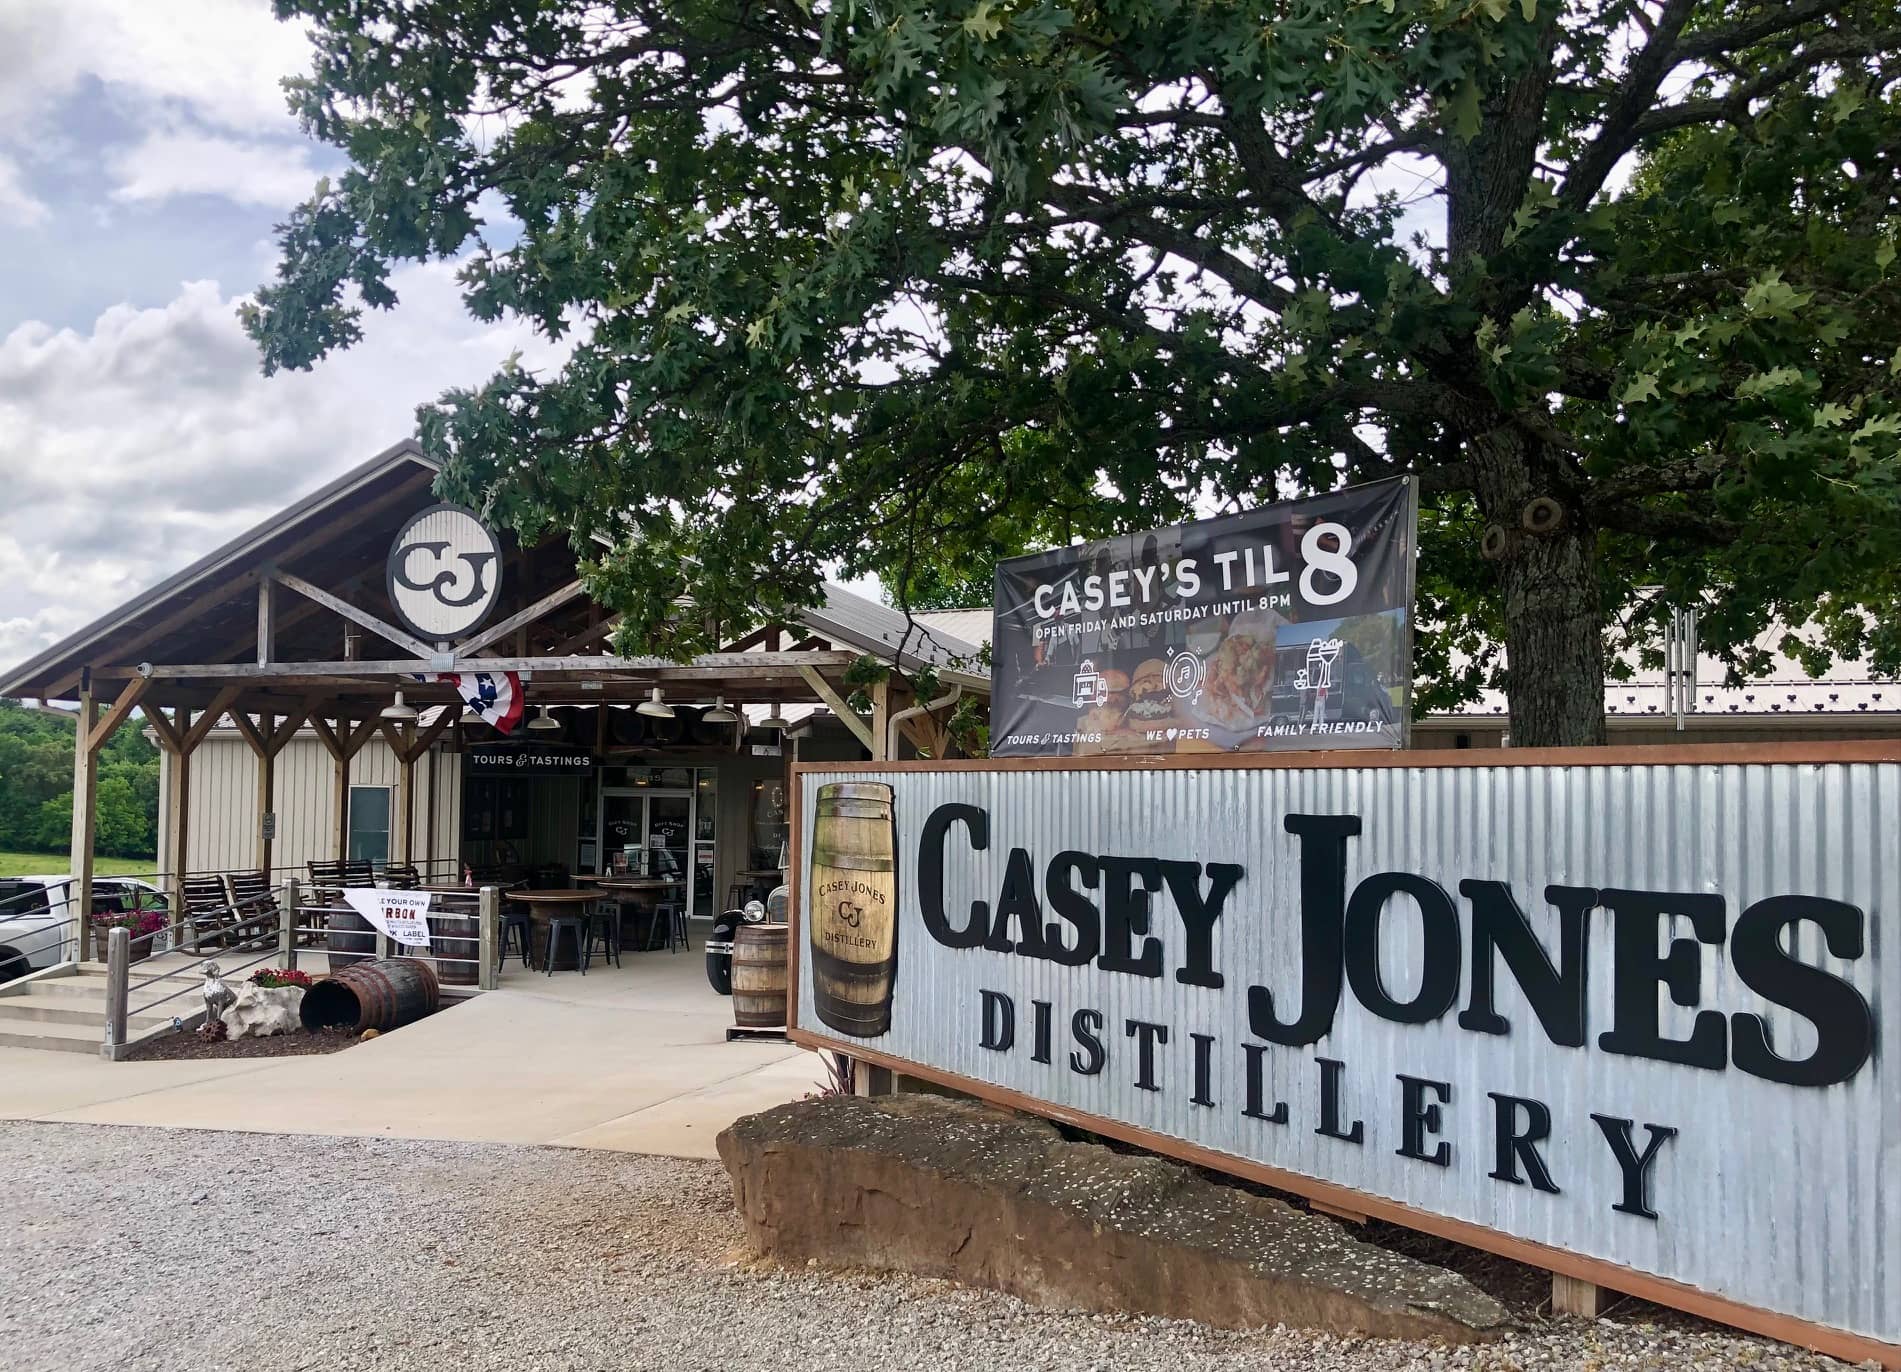 CASEY'S CORNER GIFT SHOP ITEMS — Casey Jones Distillery